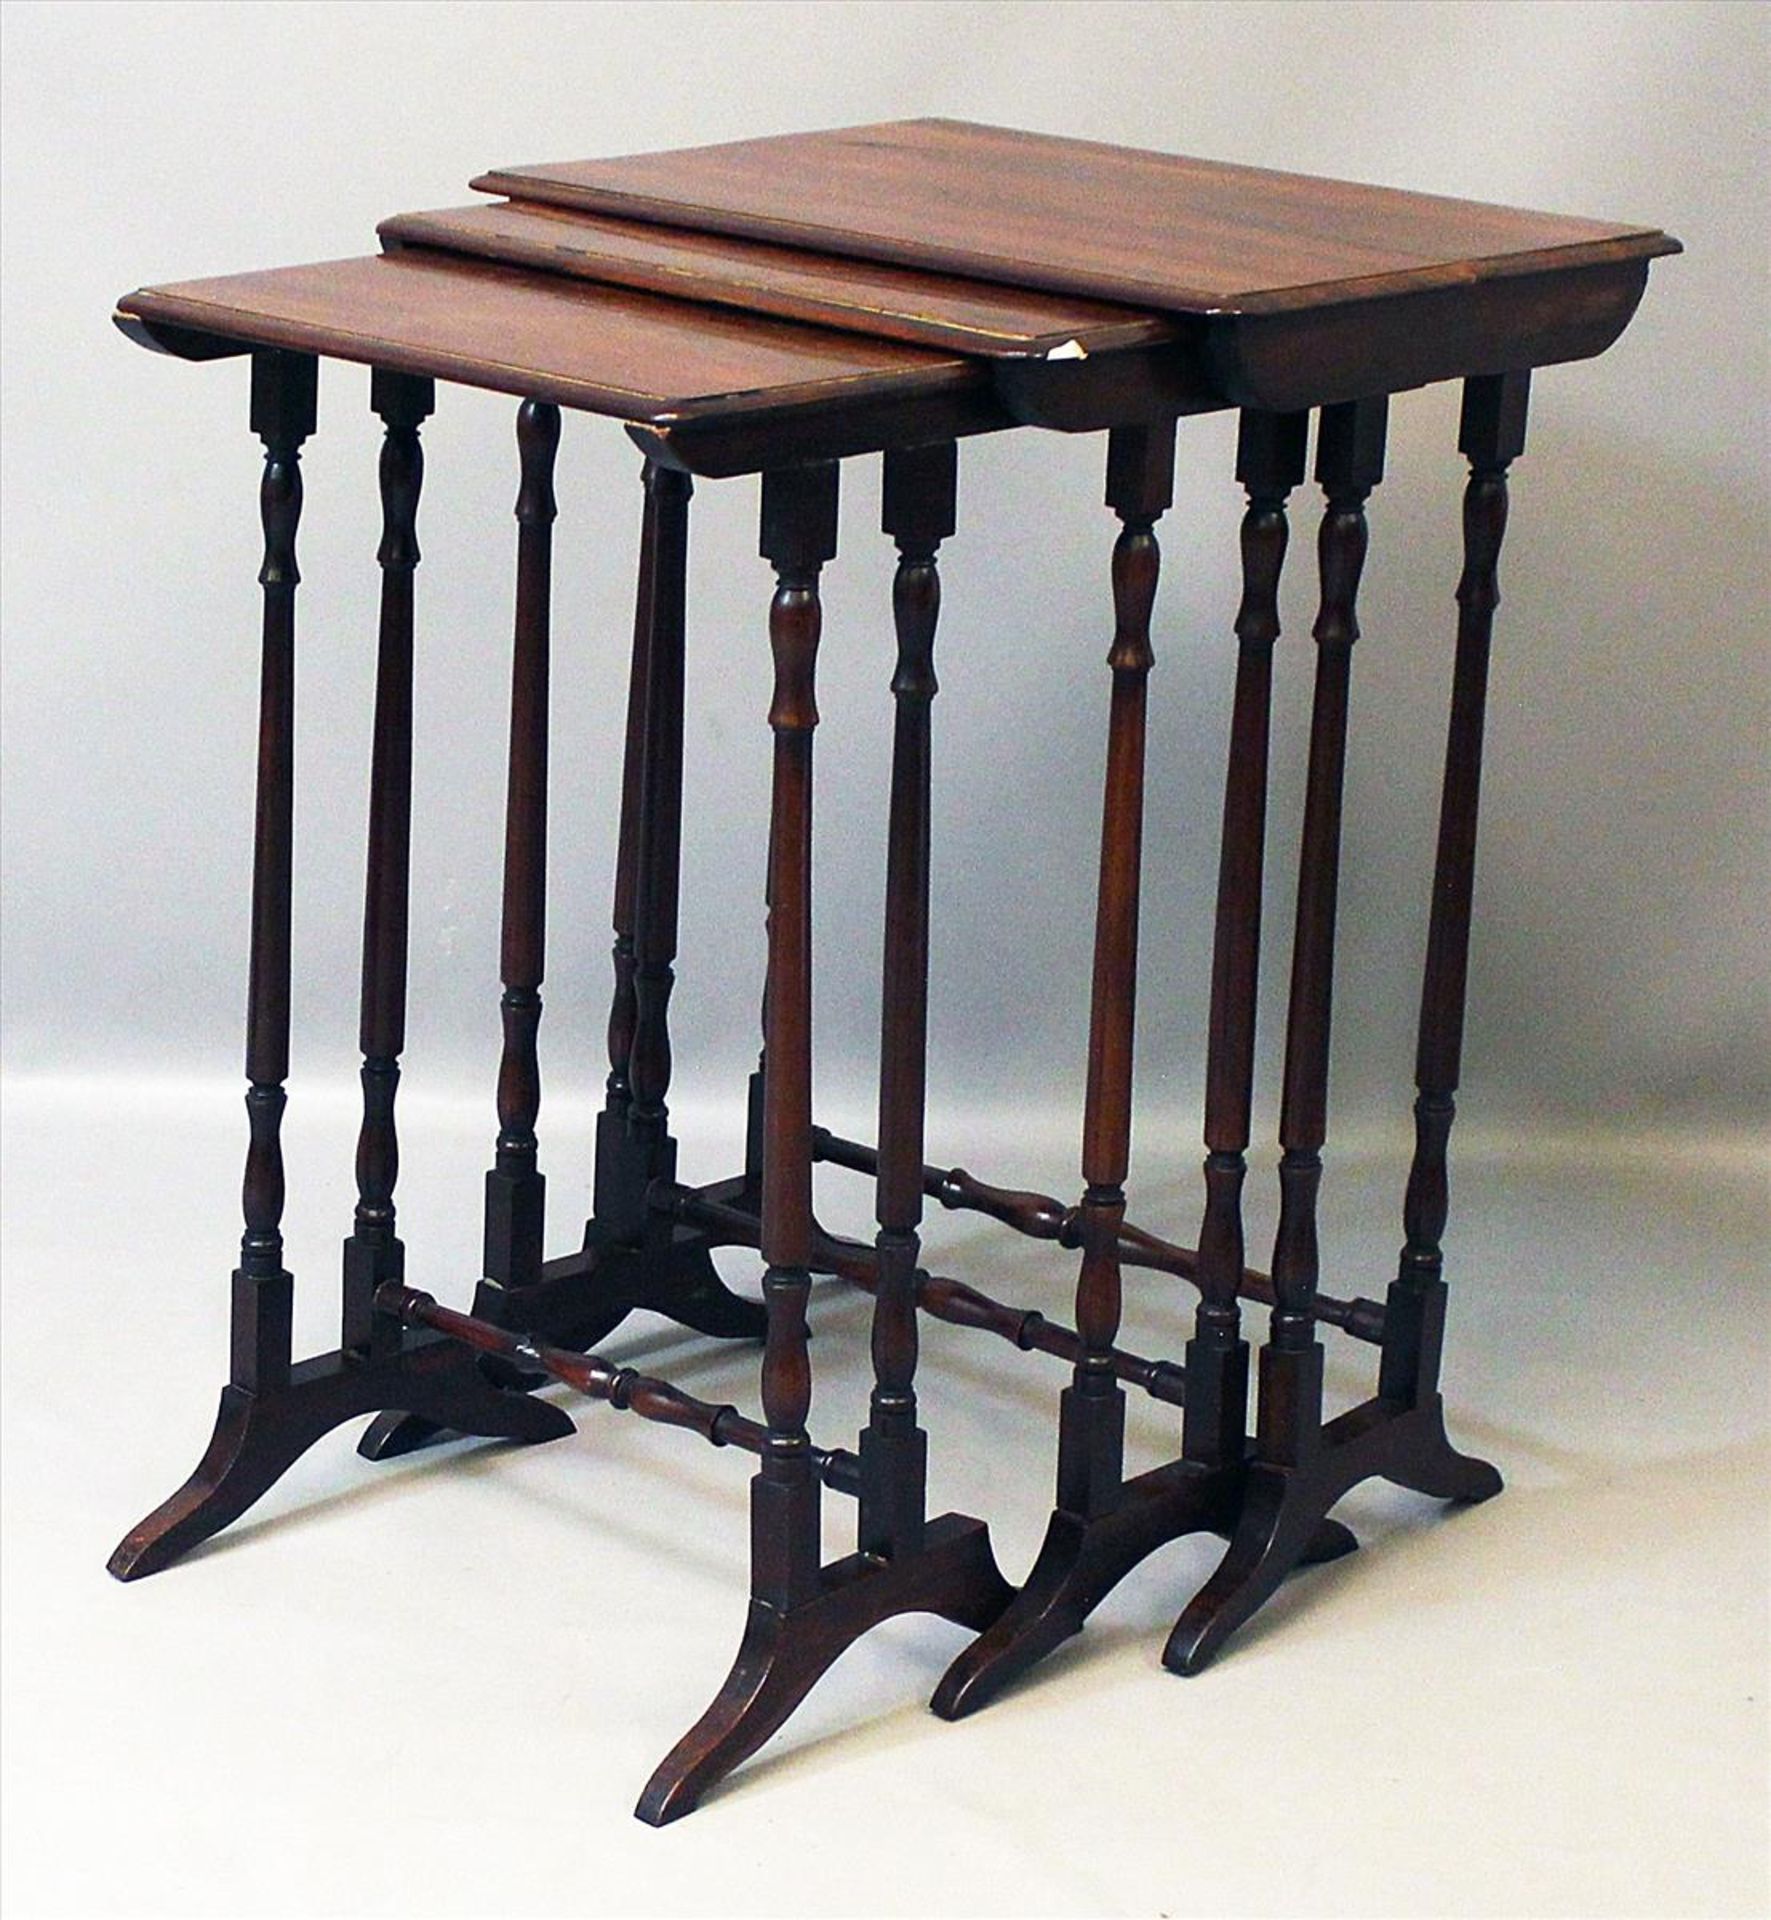 Tischset, 3-teilig.Mahagoni. Rechteckige Platten auf Säulengestellen. Gebrauchsspuren. 20. Jh. H. 66